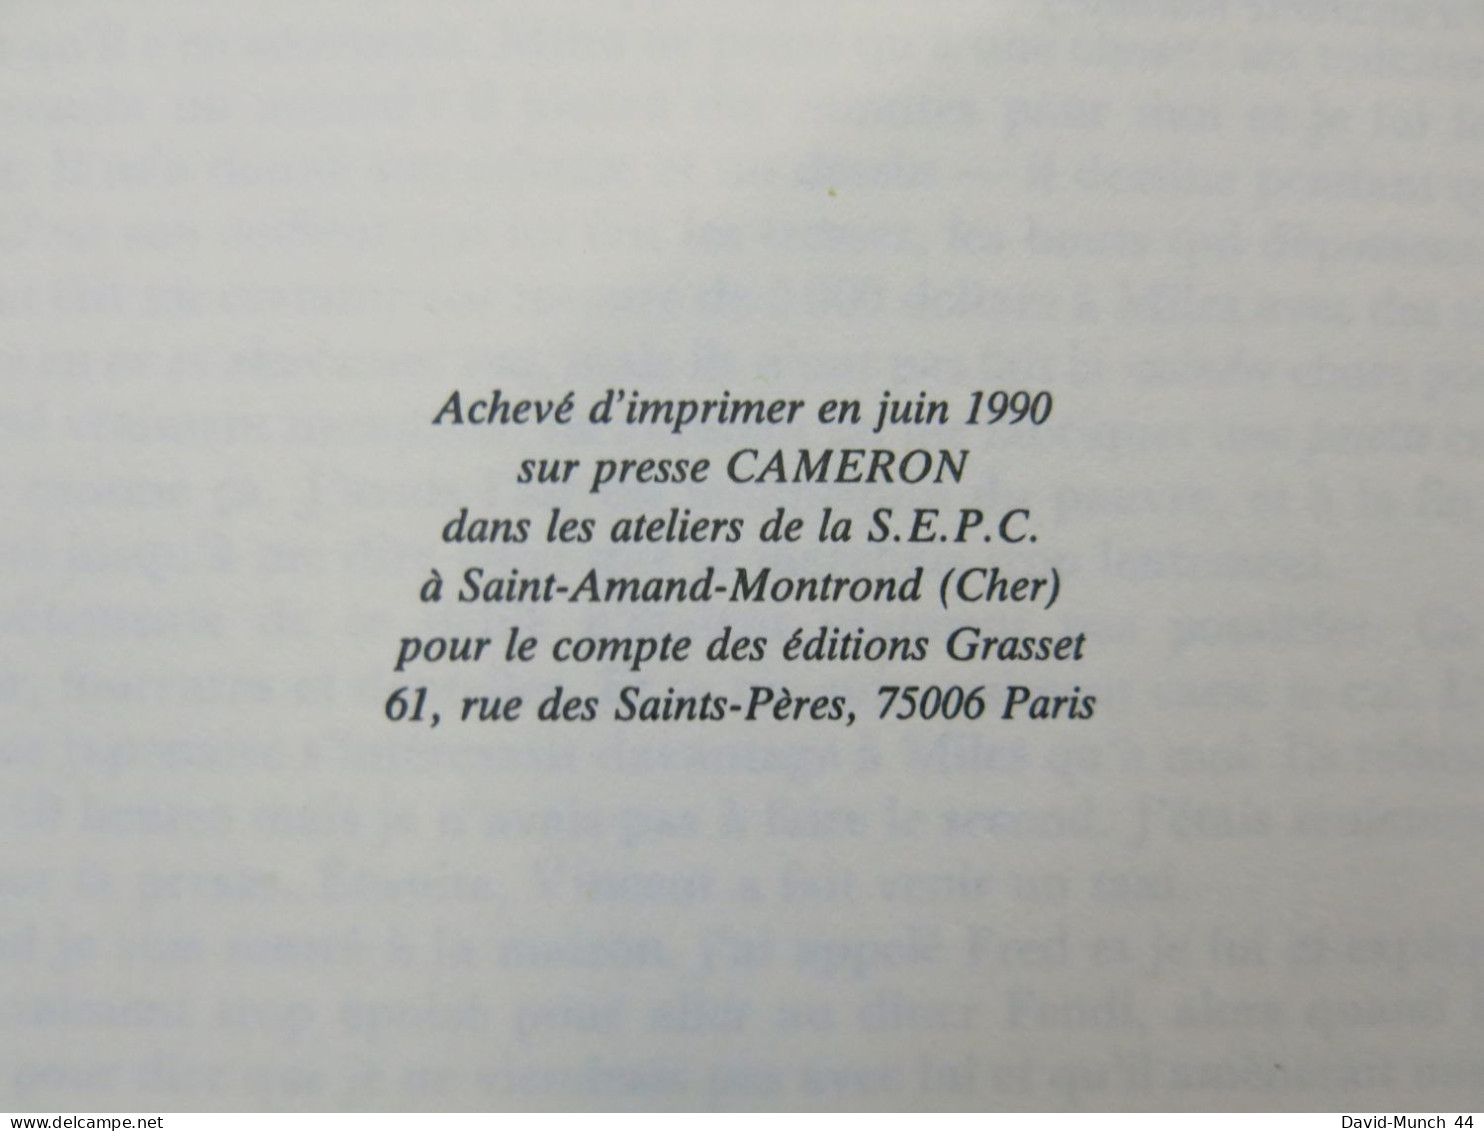 Journal de Andy Warhol, édition établie par Pat Hackett. Bernard Grasset, Paris. 1990